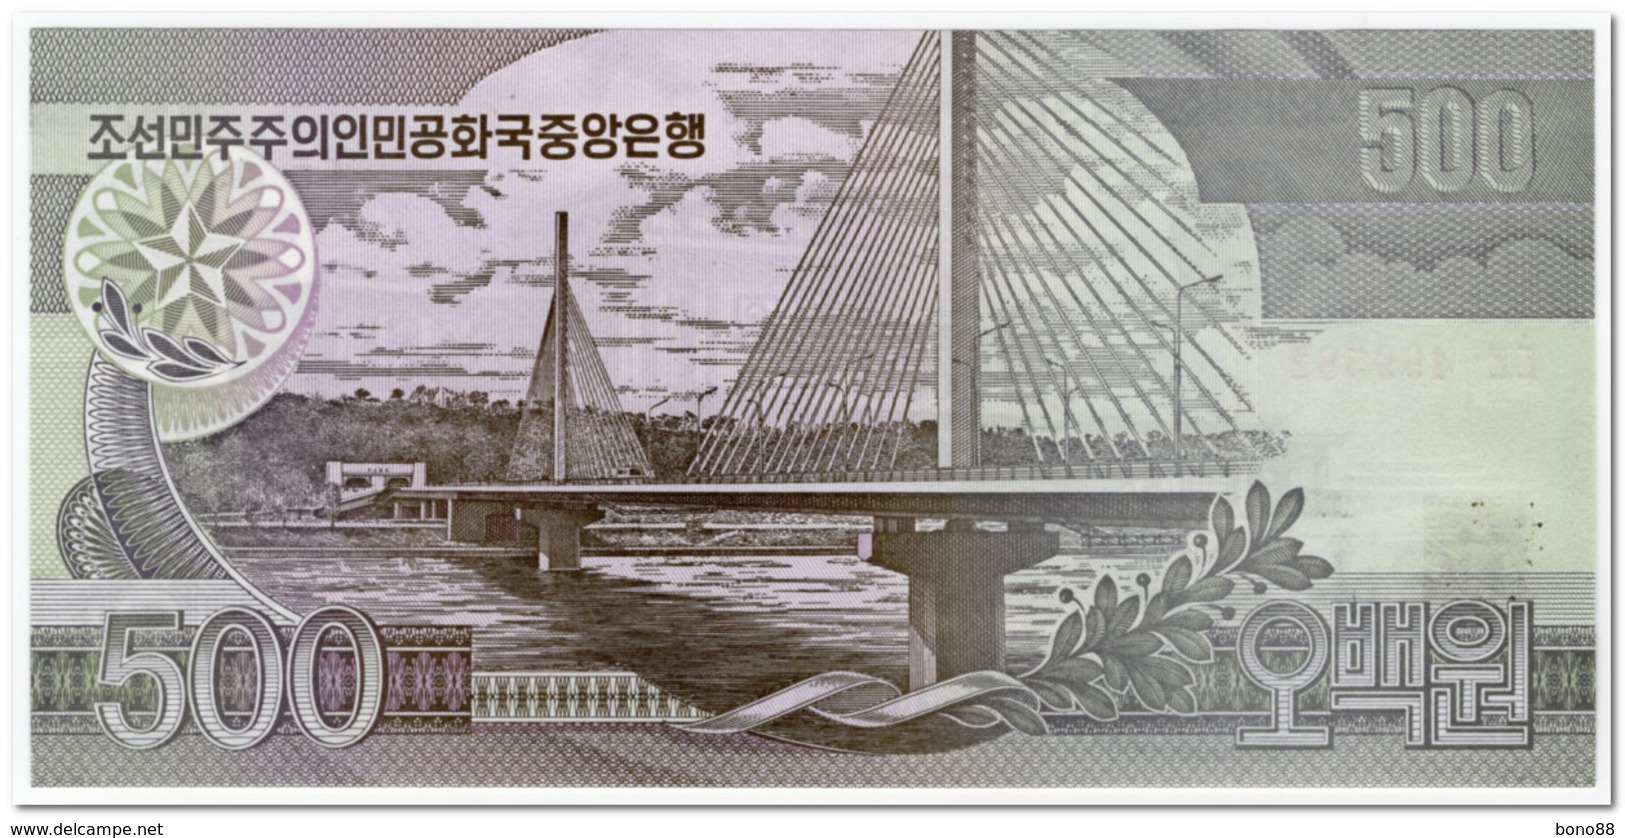 NORTH KOREA,500 WON,1998,P.44,UNC - Corée Du Nord